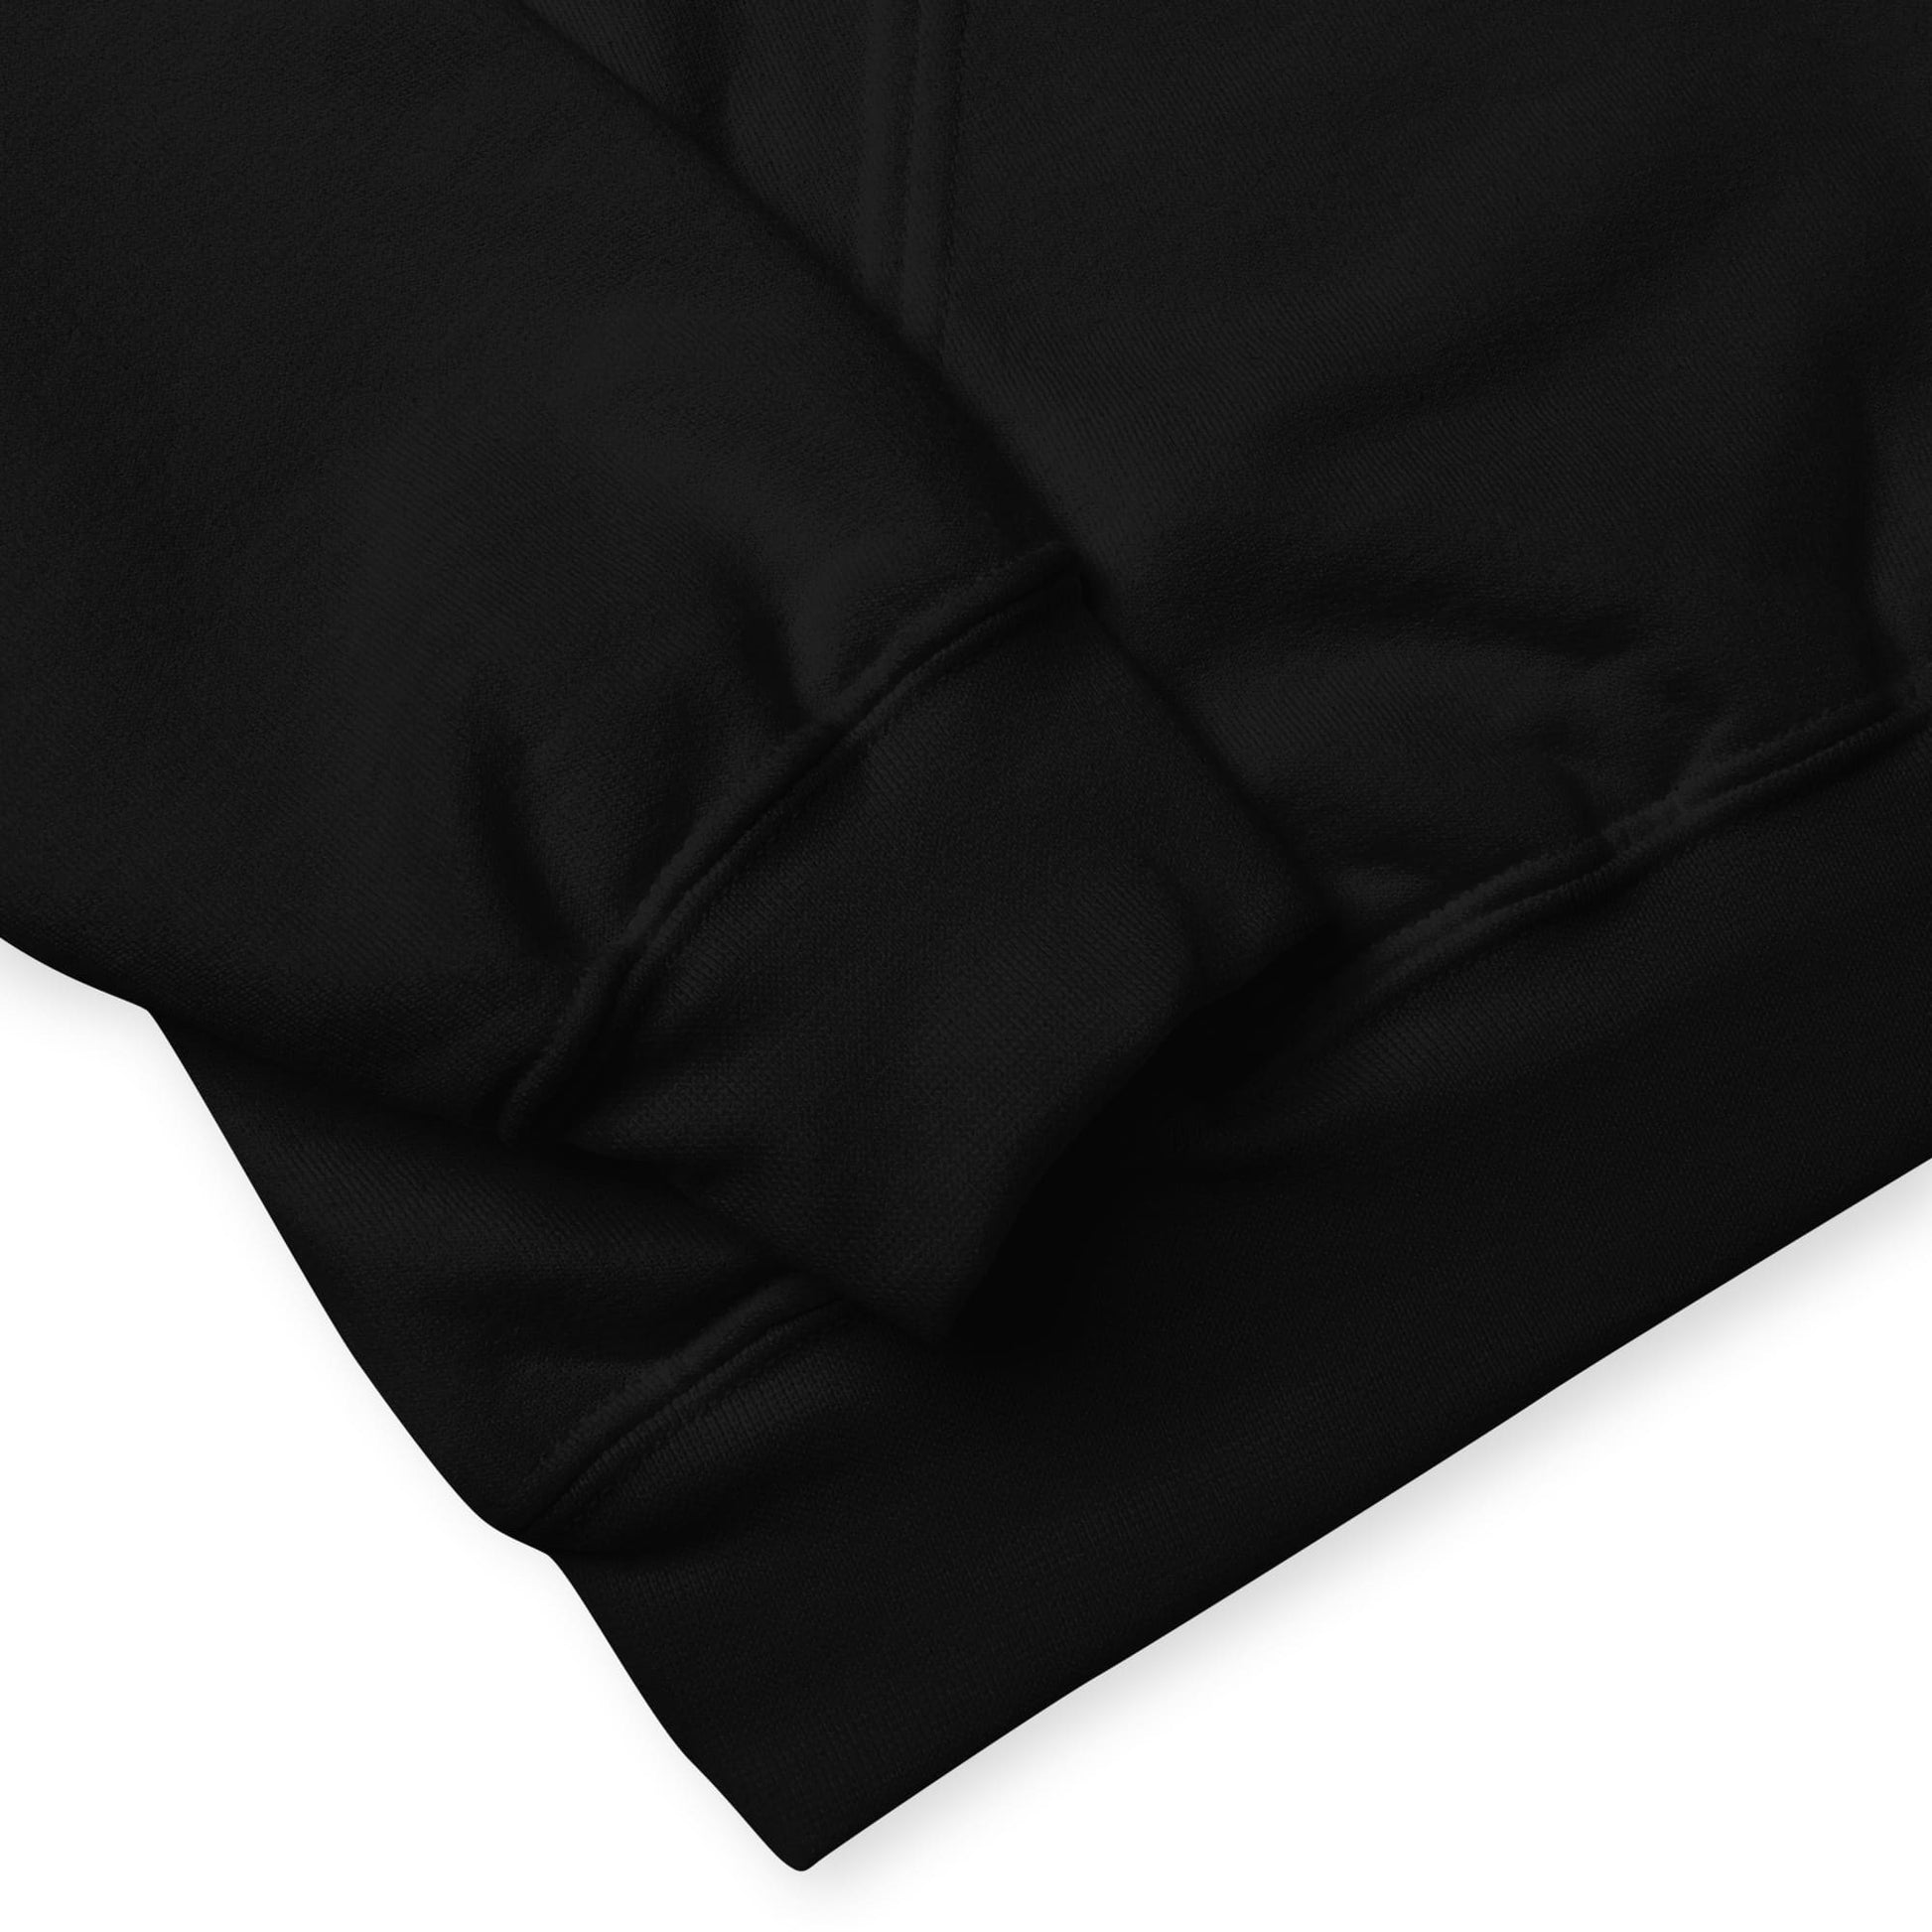 bear pride hoodie, subtle gay bear embroidered pocket design hooded sweatshirt, sleeve